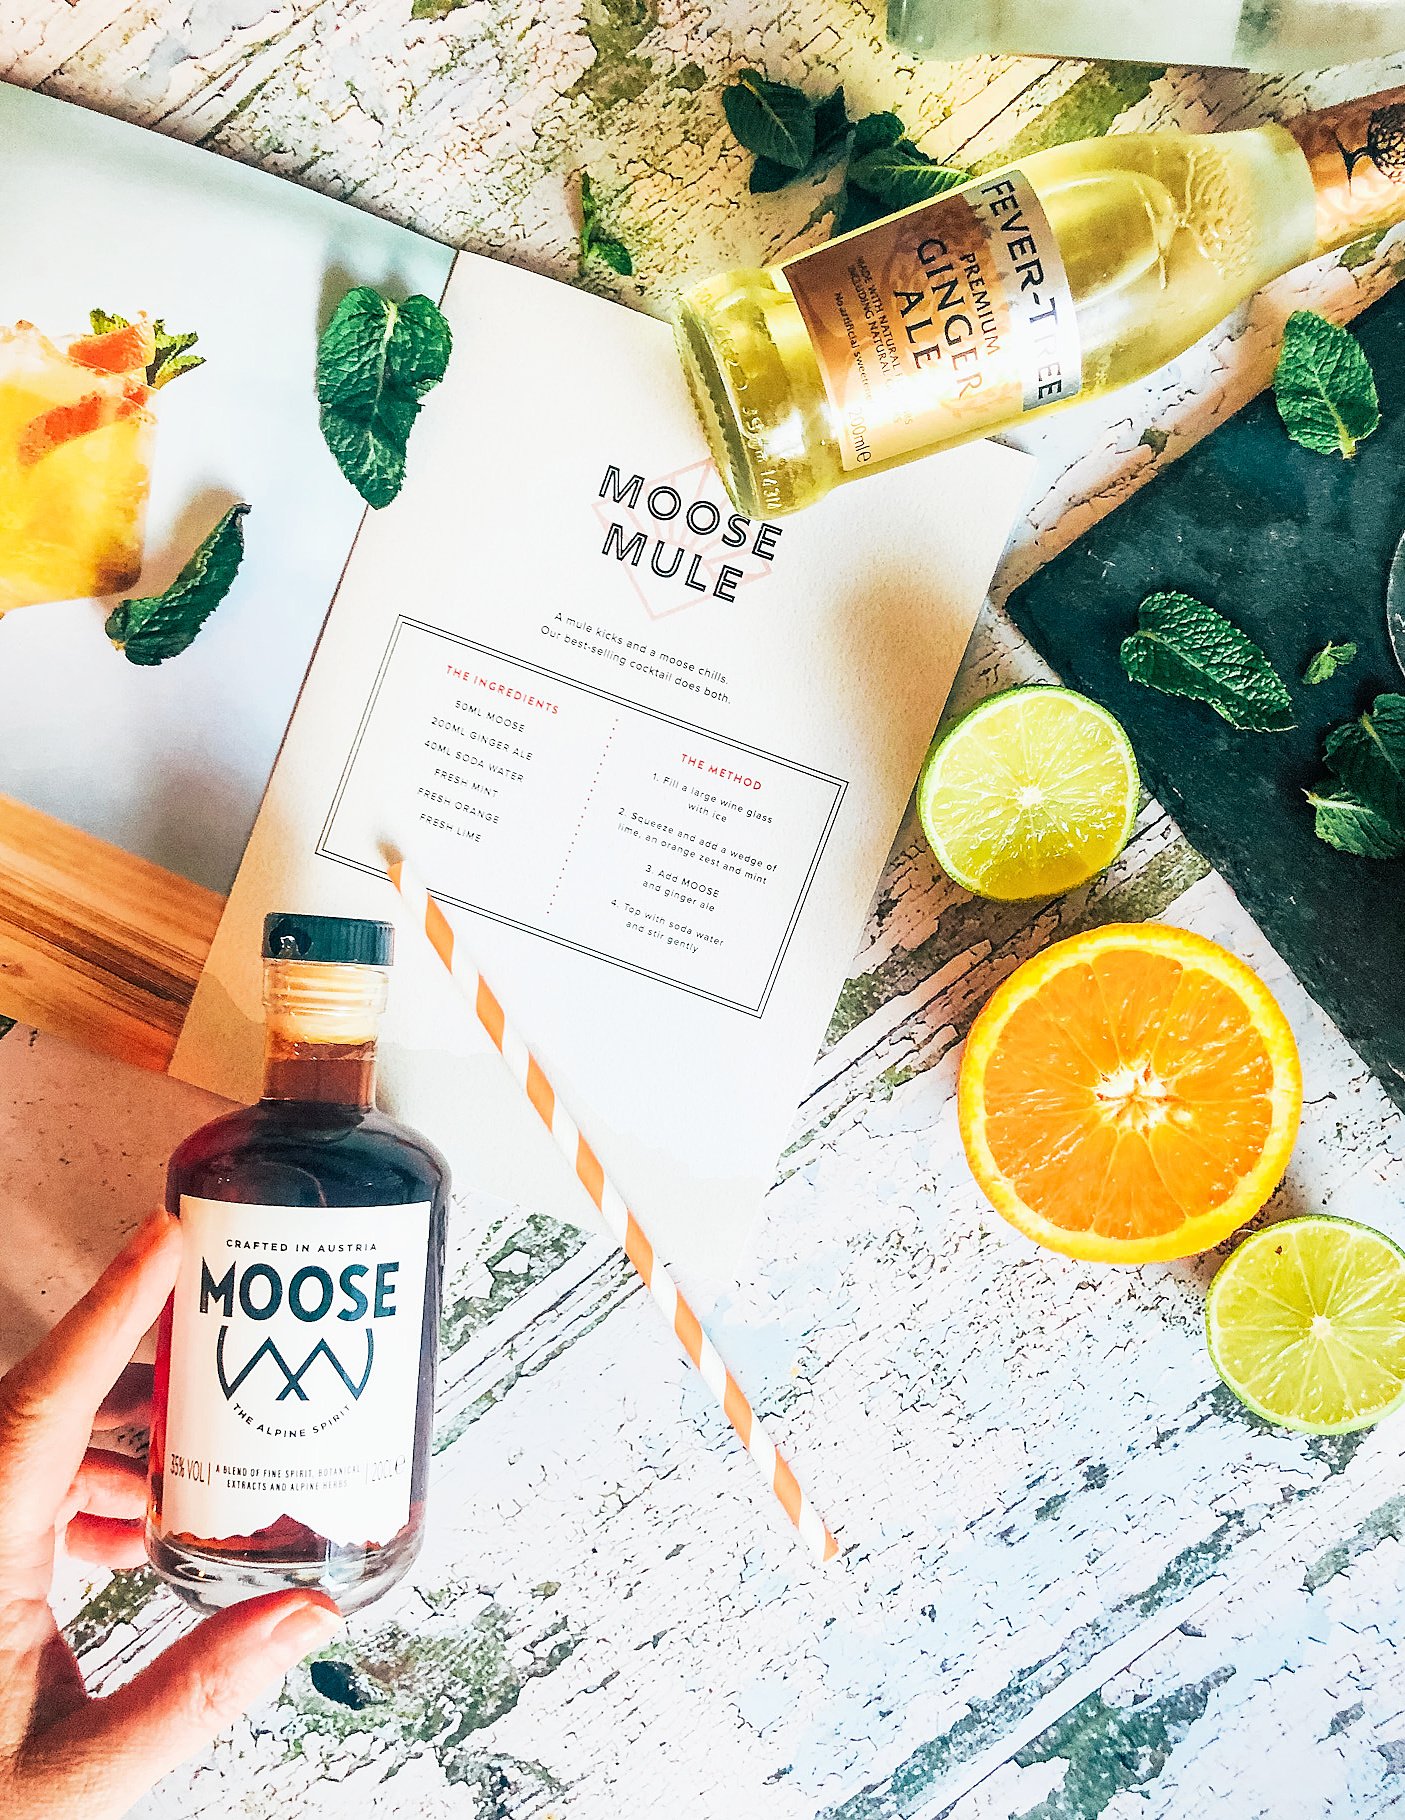 Moose cocktail  recipe